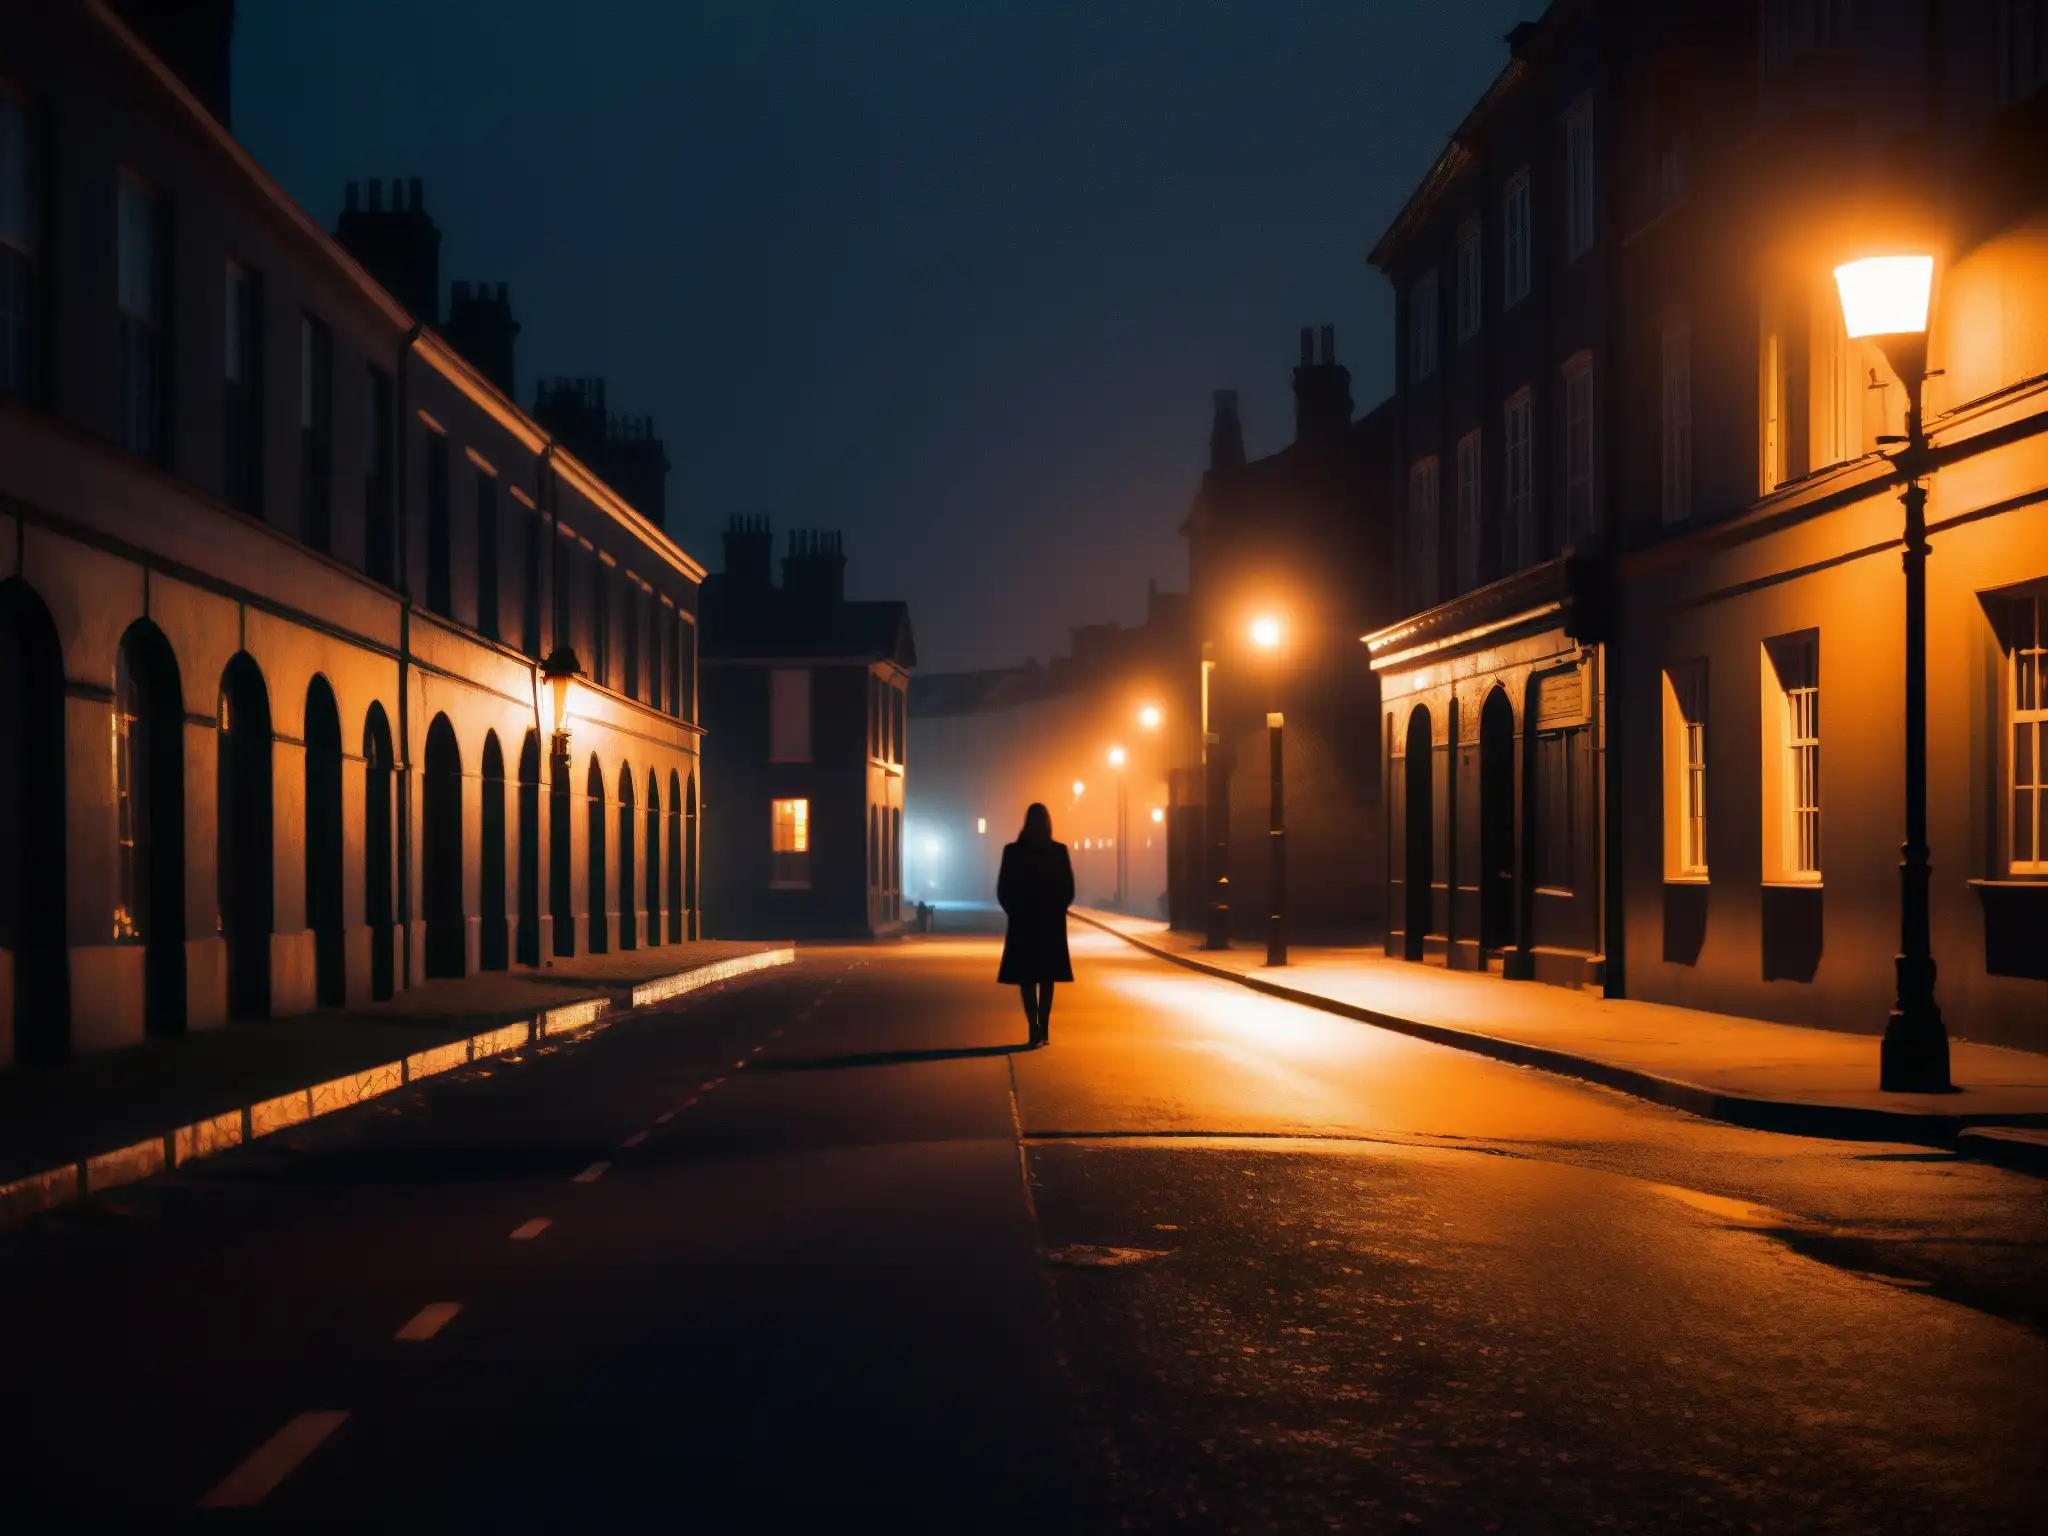 Una fotografía oscura y granulada de una calle desierta por la noche, iluminada solo por el titilante resplandor anaranjado de las farolas